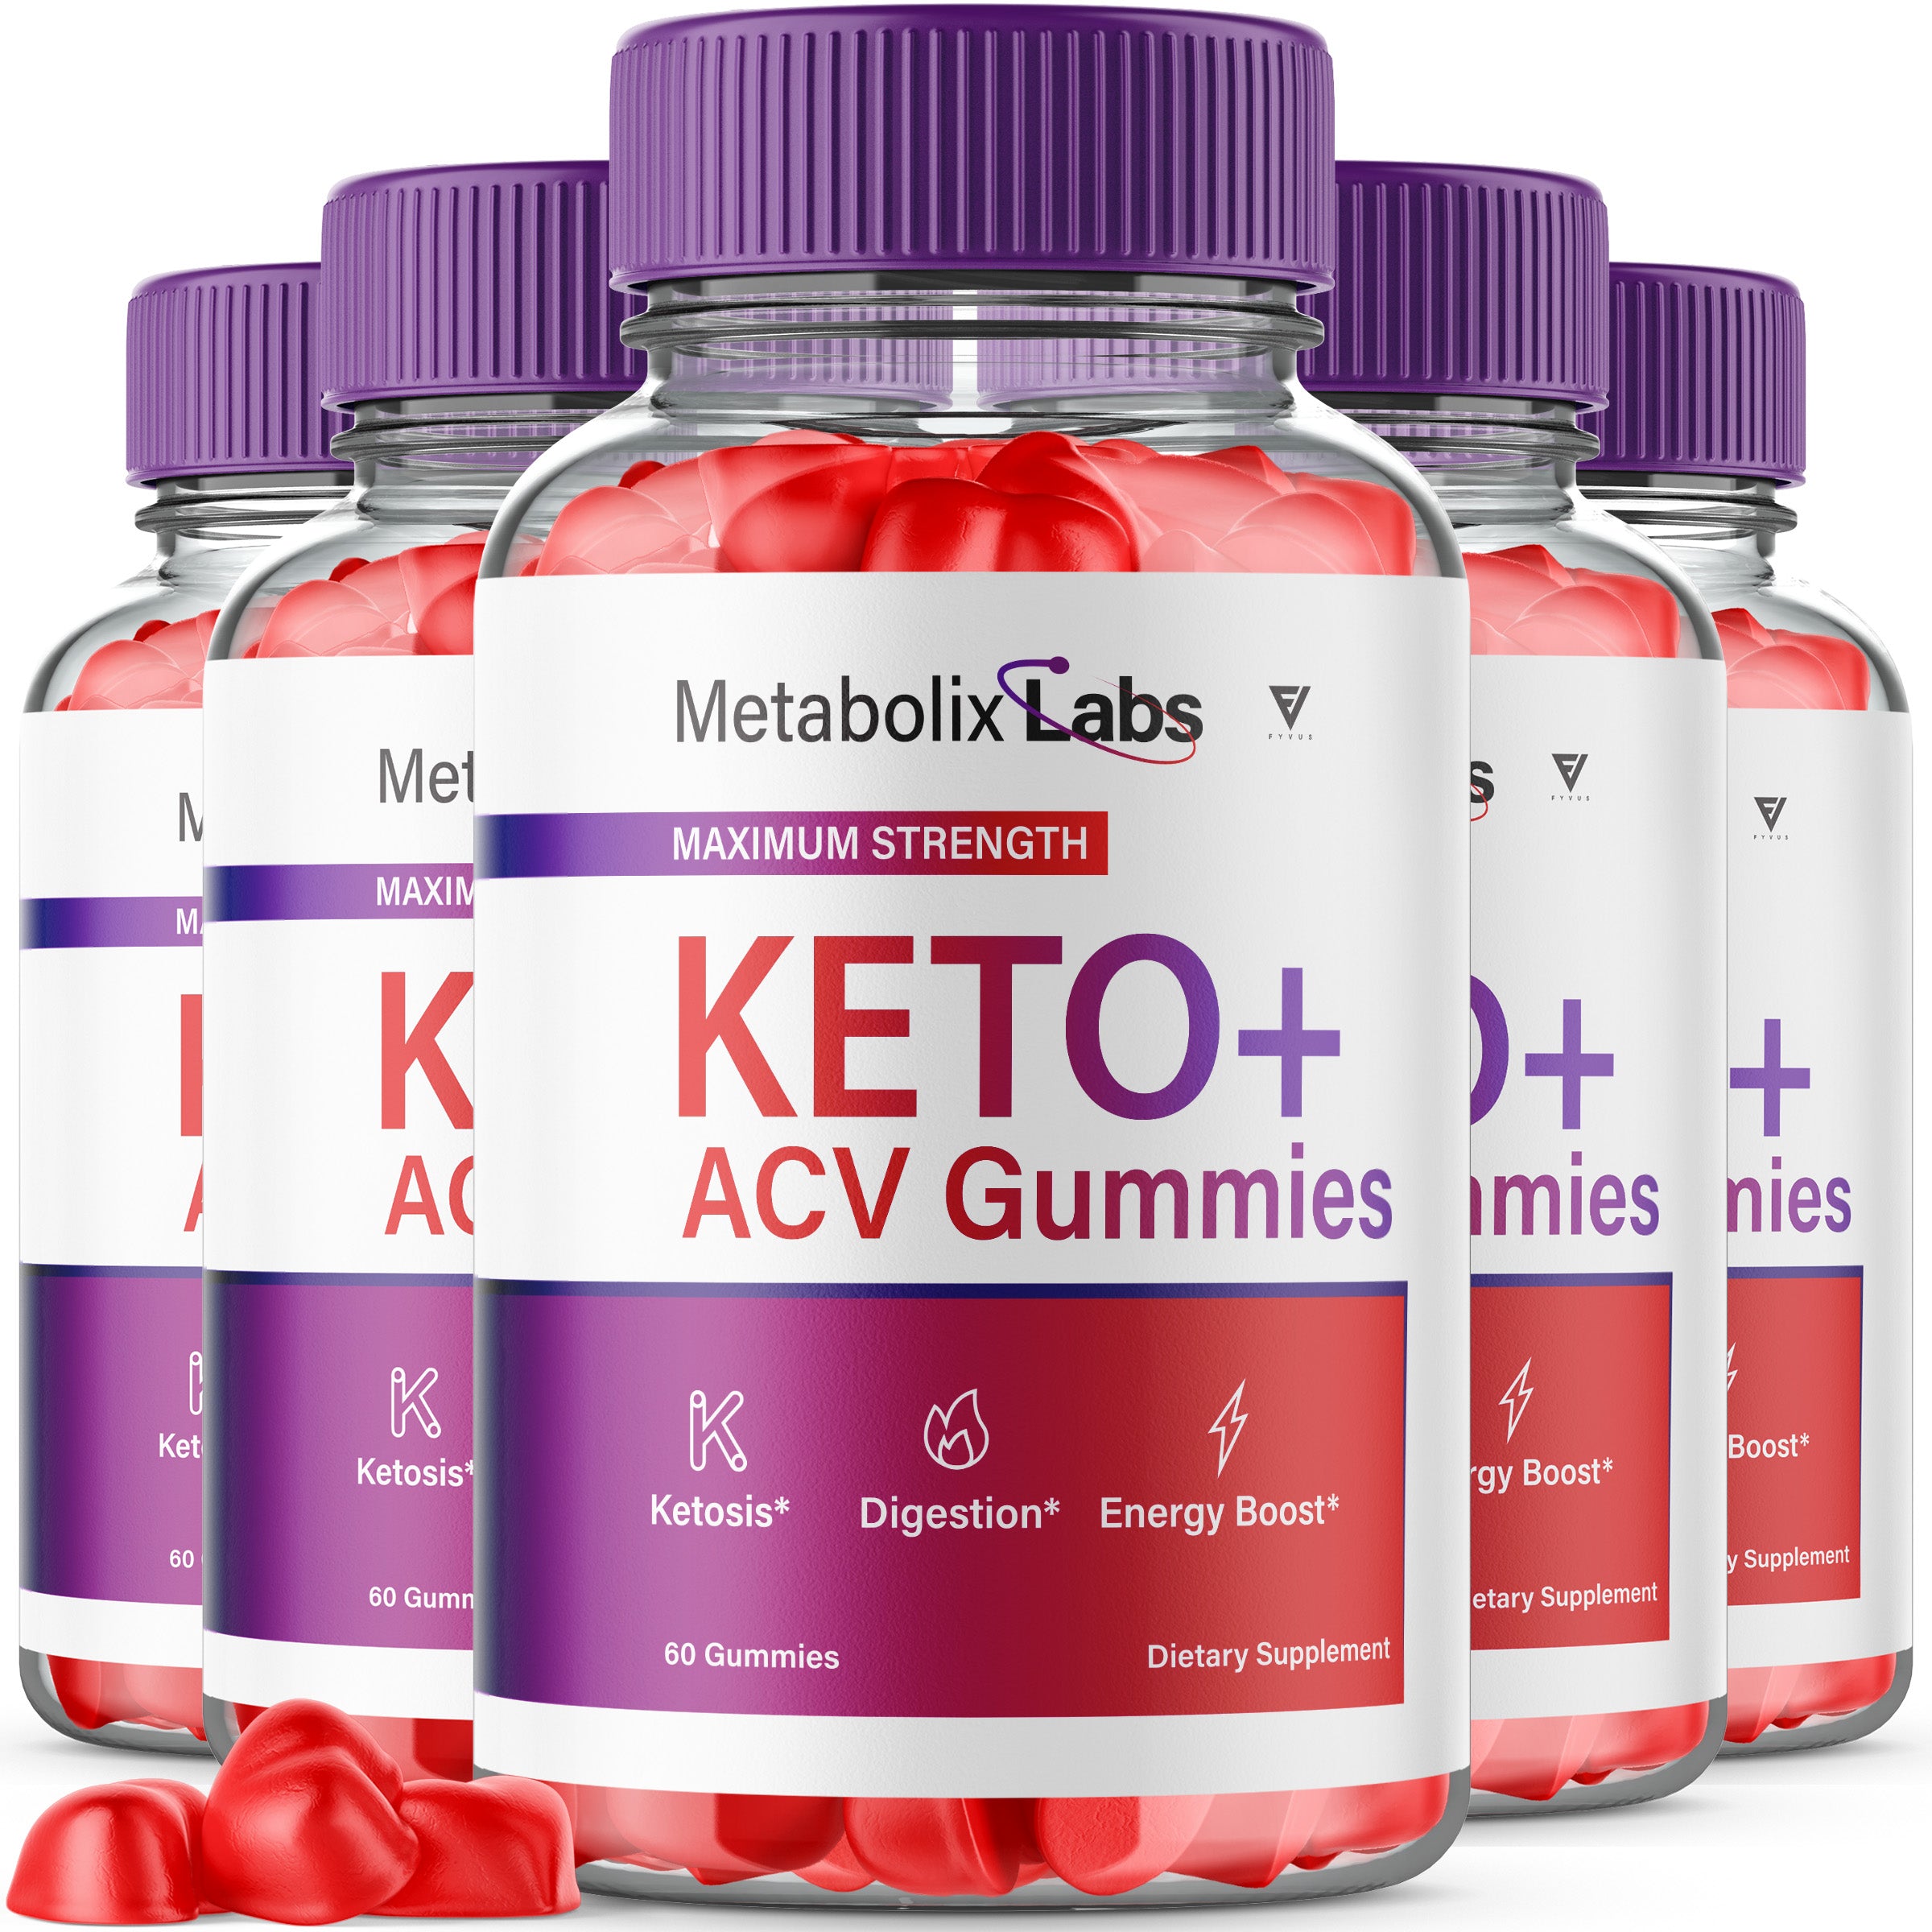 Metabolix Labs Keto ACV Gummies